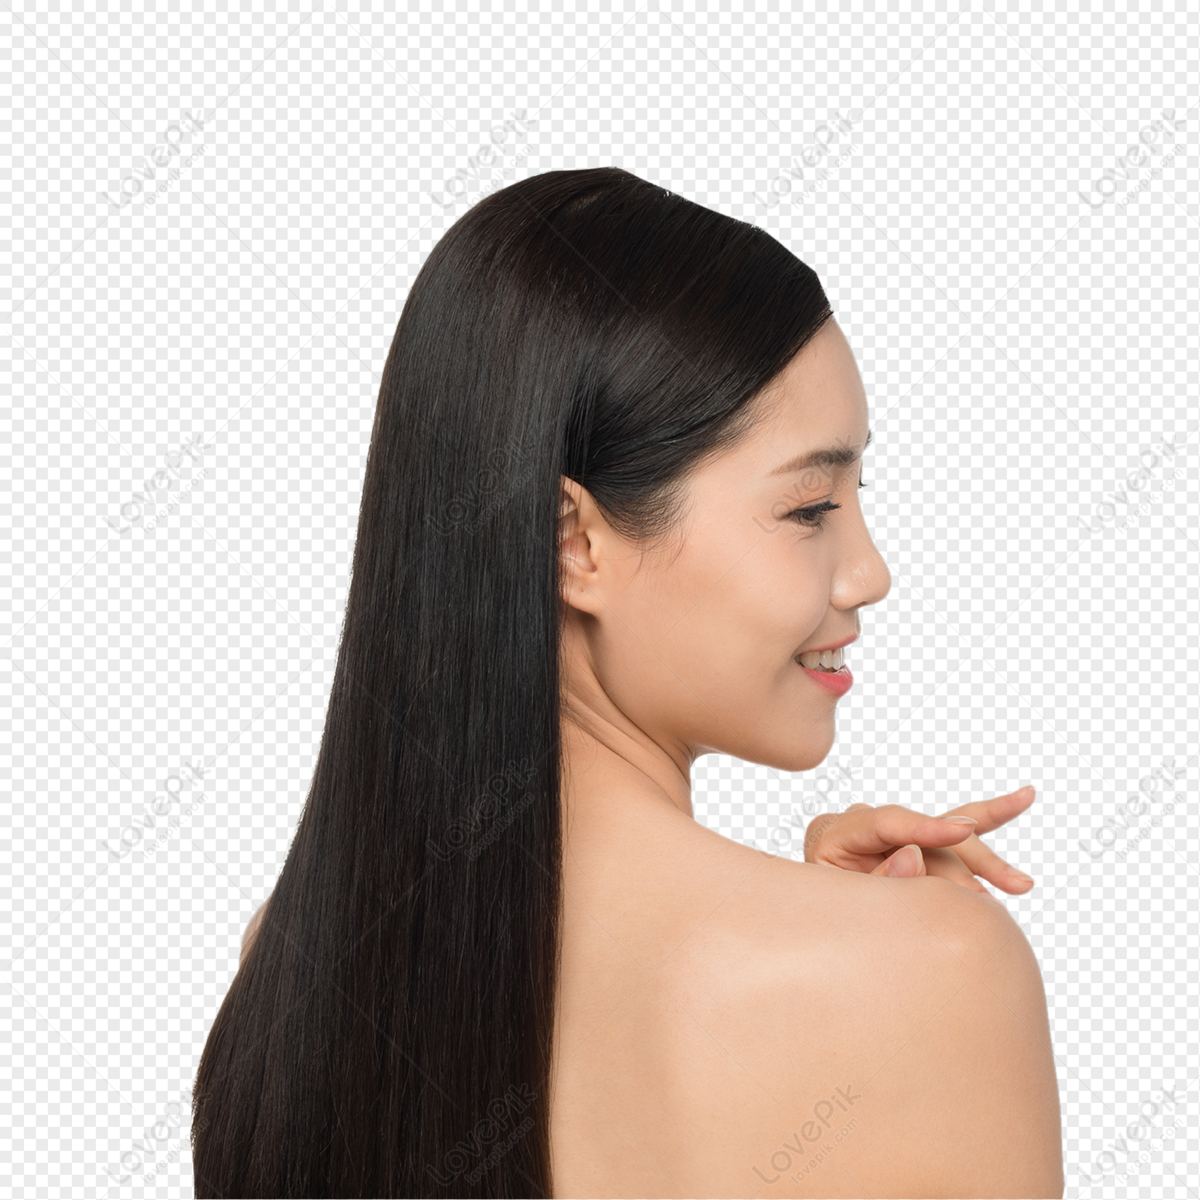 Làm đẹp tóc dài sẽ không còn là nỗi ngại ngần hay khó khăn nữa khi bạn xem những bức ảnh thú vị về chủ đề làm đẹp tóc dài.